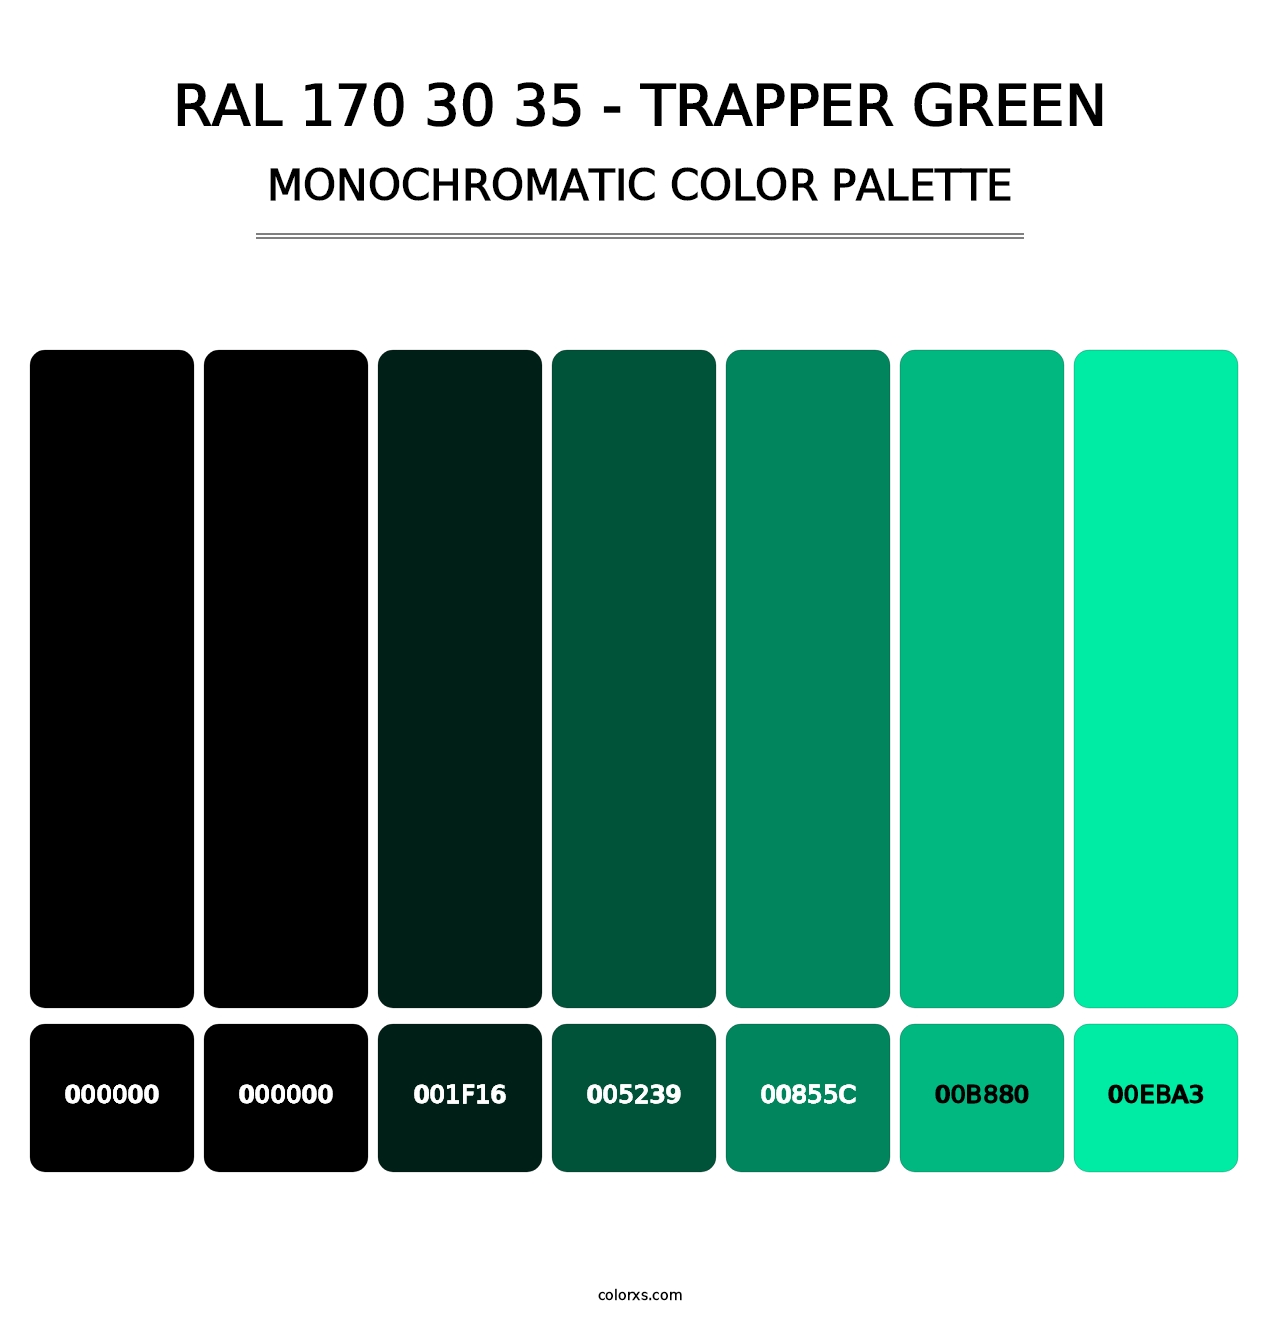 RAL 170 30 35 - Trapper Green - Monochromatic Color Palette